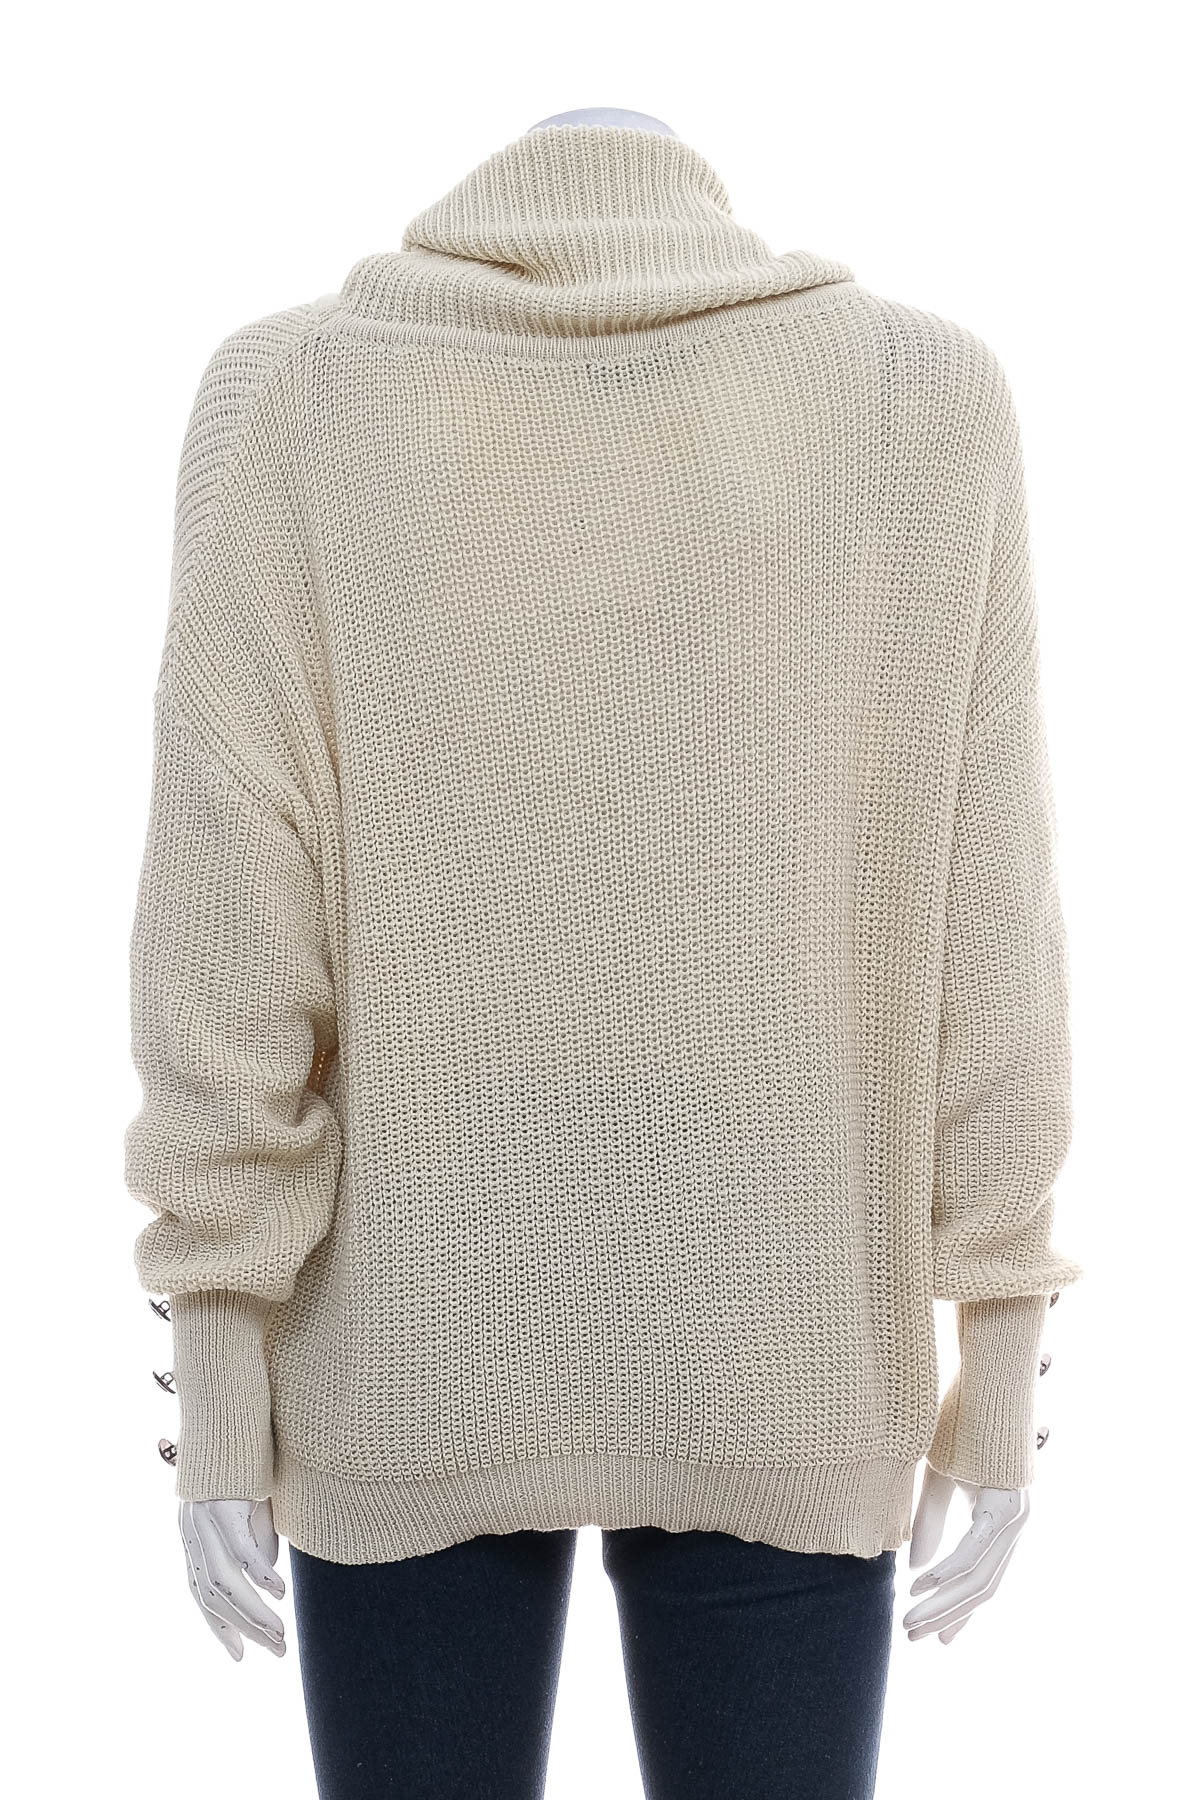 Дамски пуловер - C.O.Z.Y by Shopcozy - 1